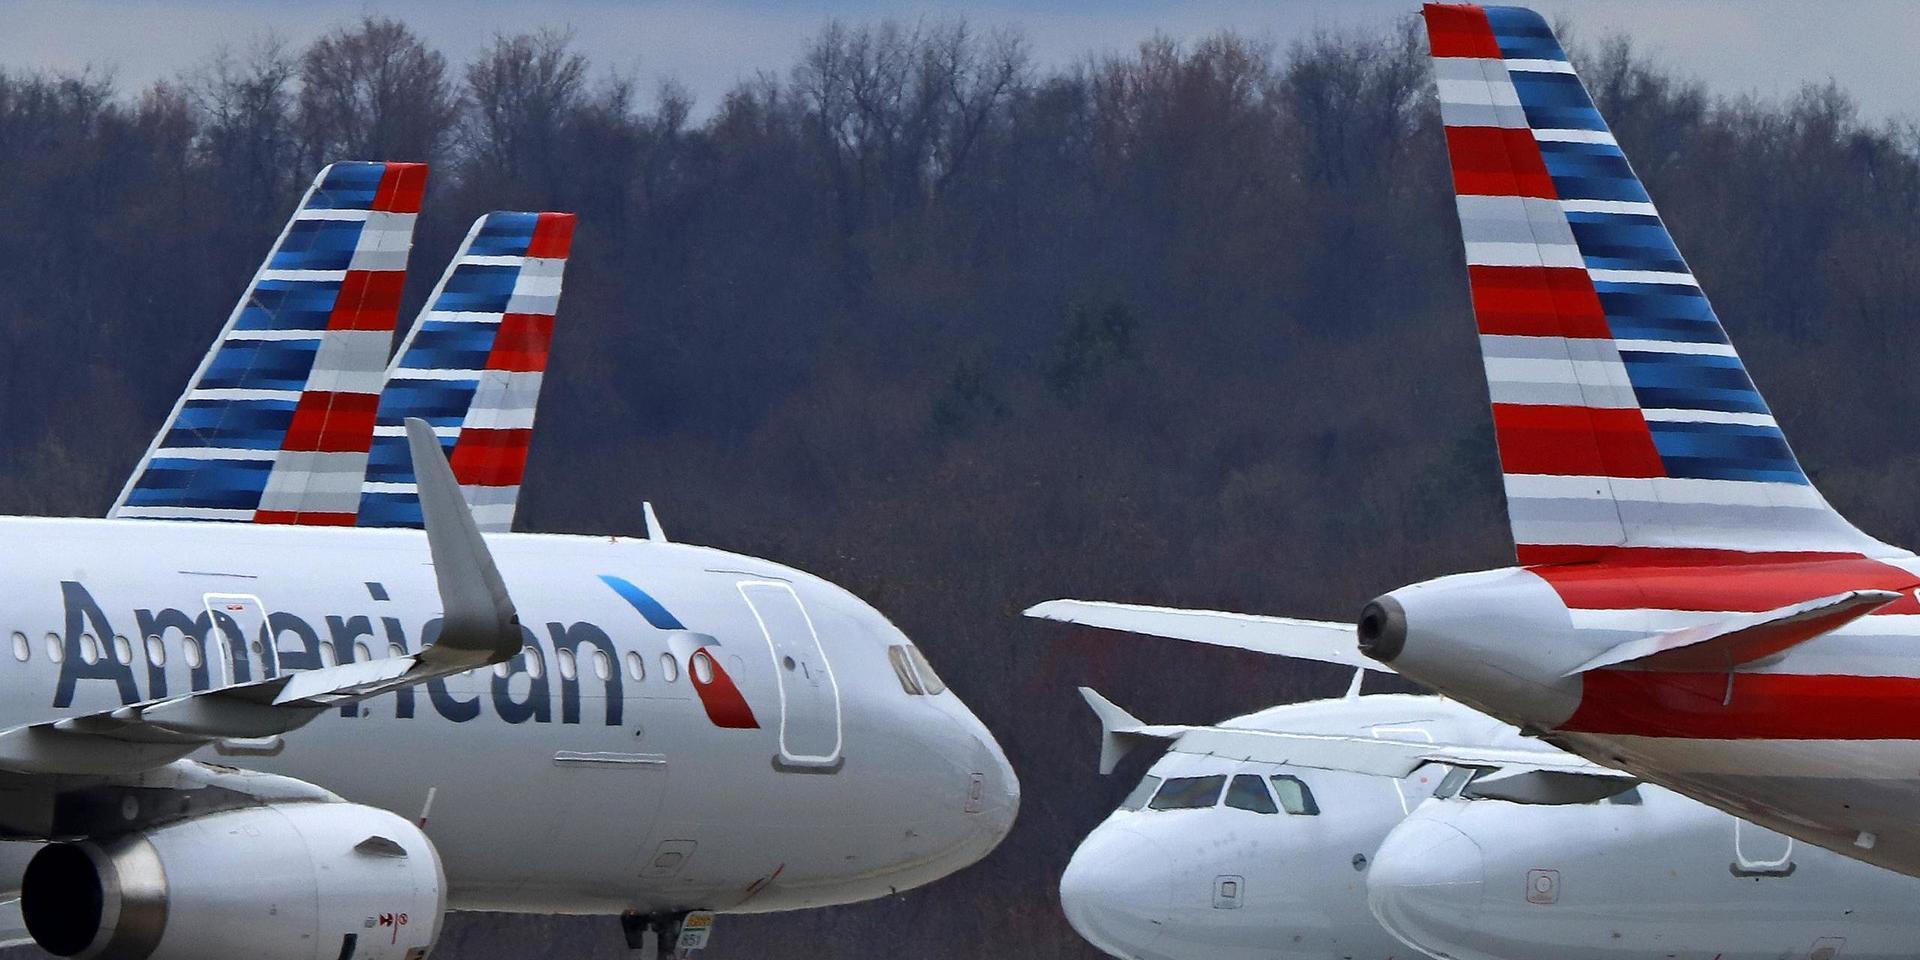 Flera stora flygbolag vill införa ett gemensamt testningsprogram av covid-19 på flygplatserna för att få igång trafiken mellan USA och Europa igen. Arkivbild.